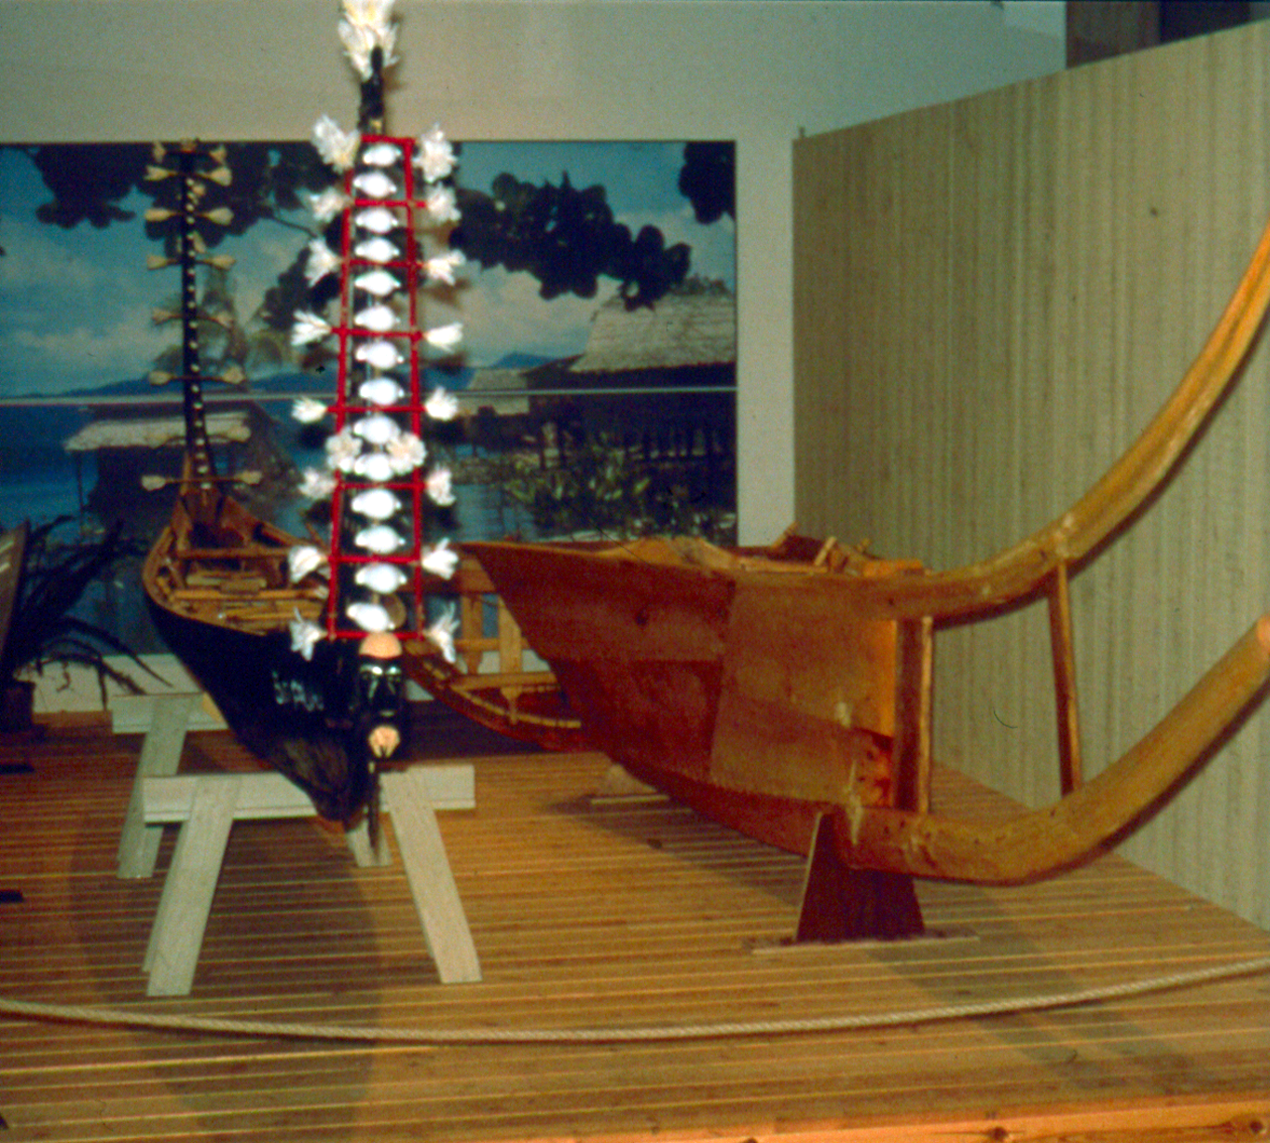 Prøvestykkerne i Vikingeskibshallen i Roskilde sammen med en syet kano fra Salomonøerne.